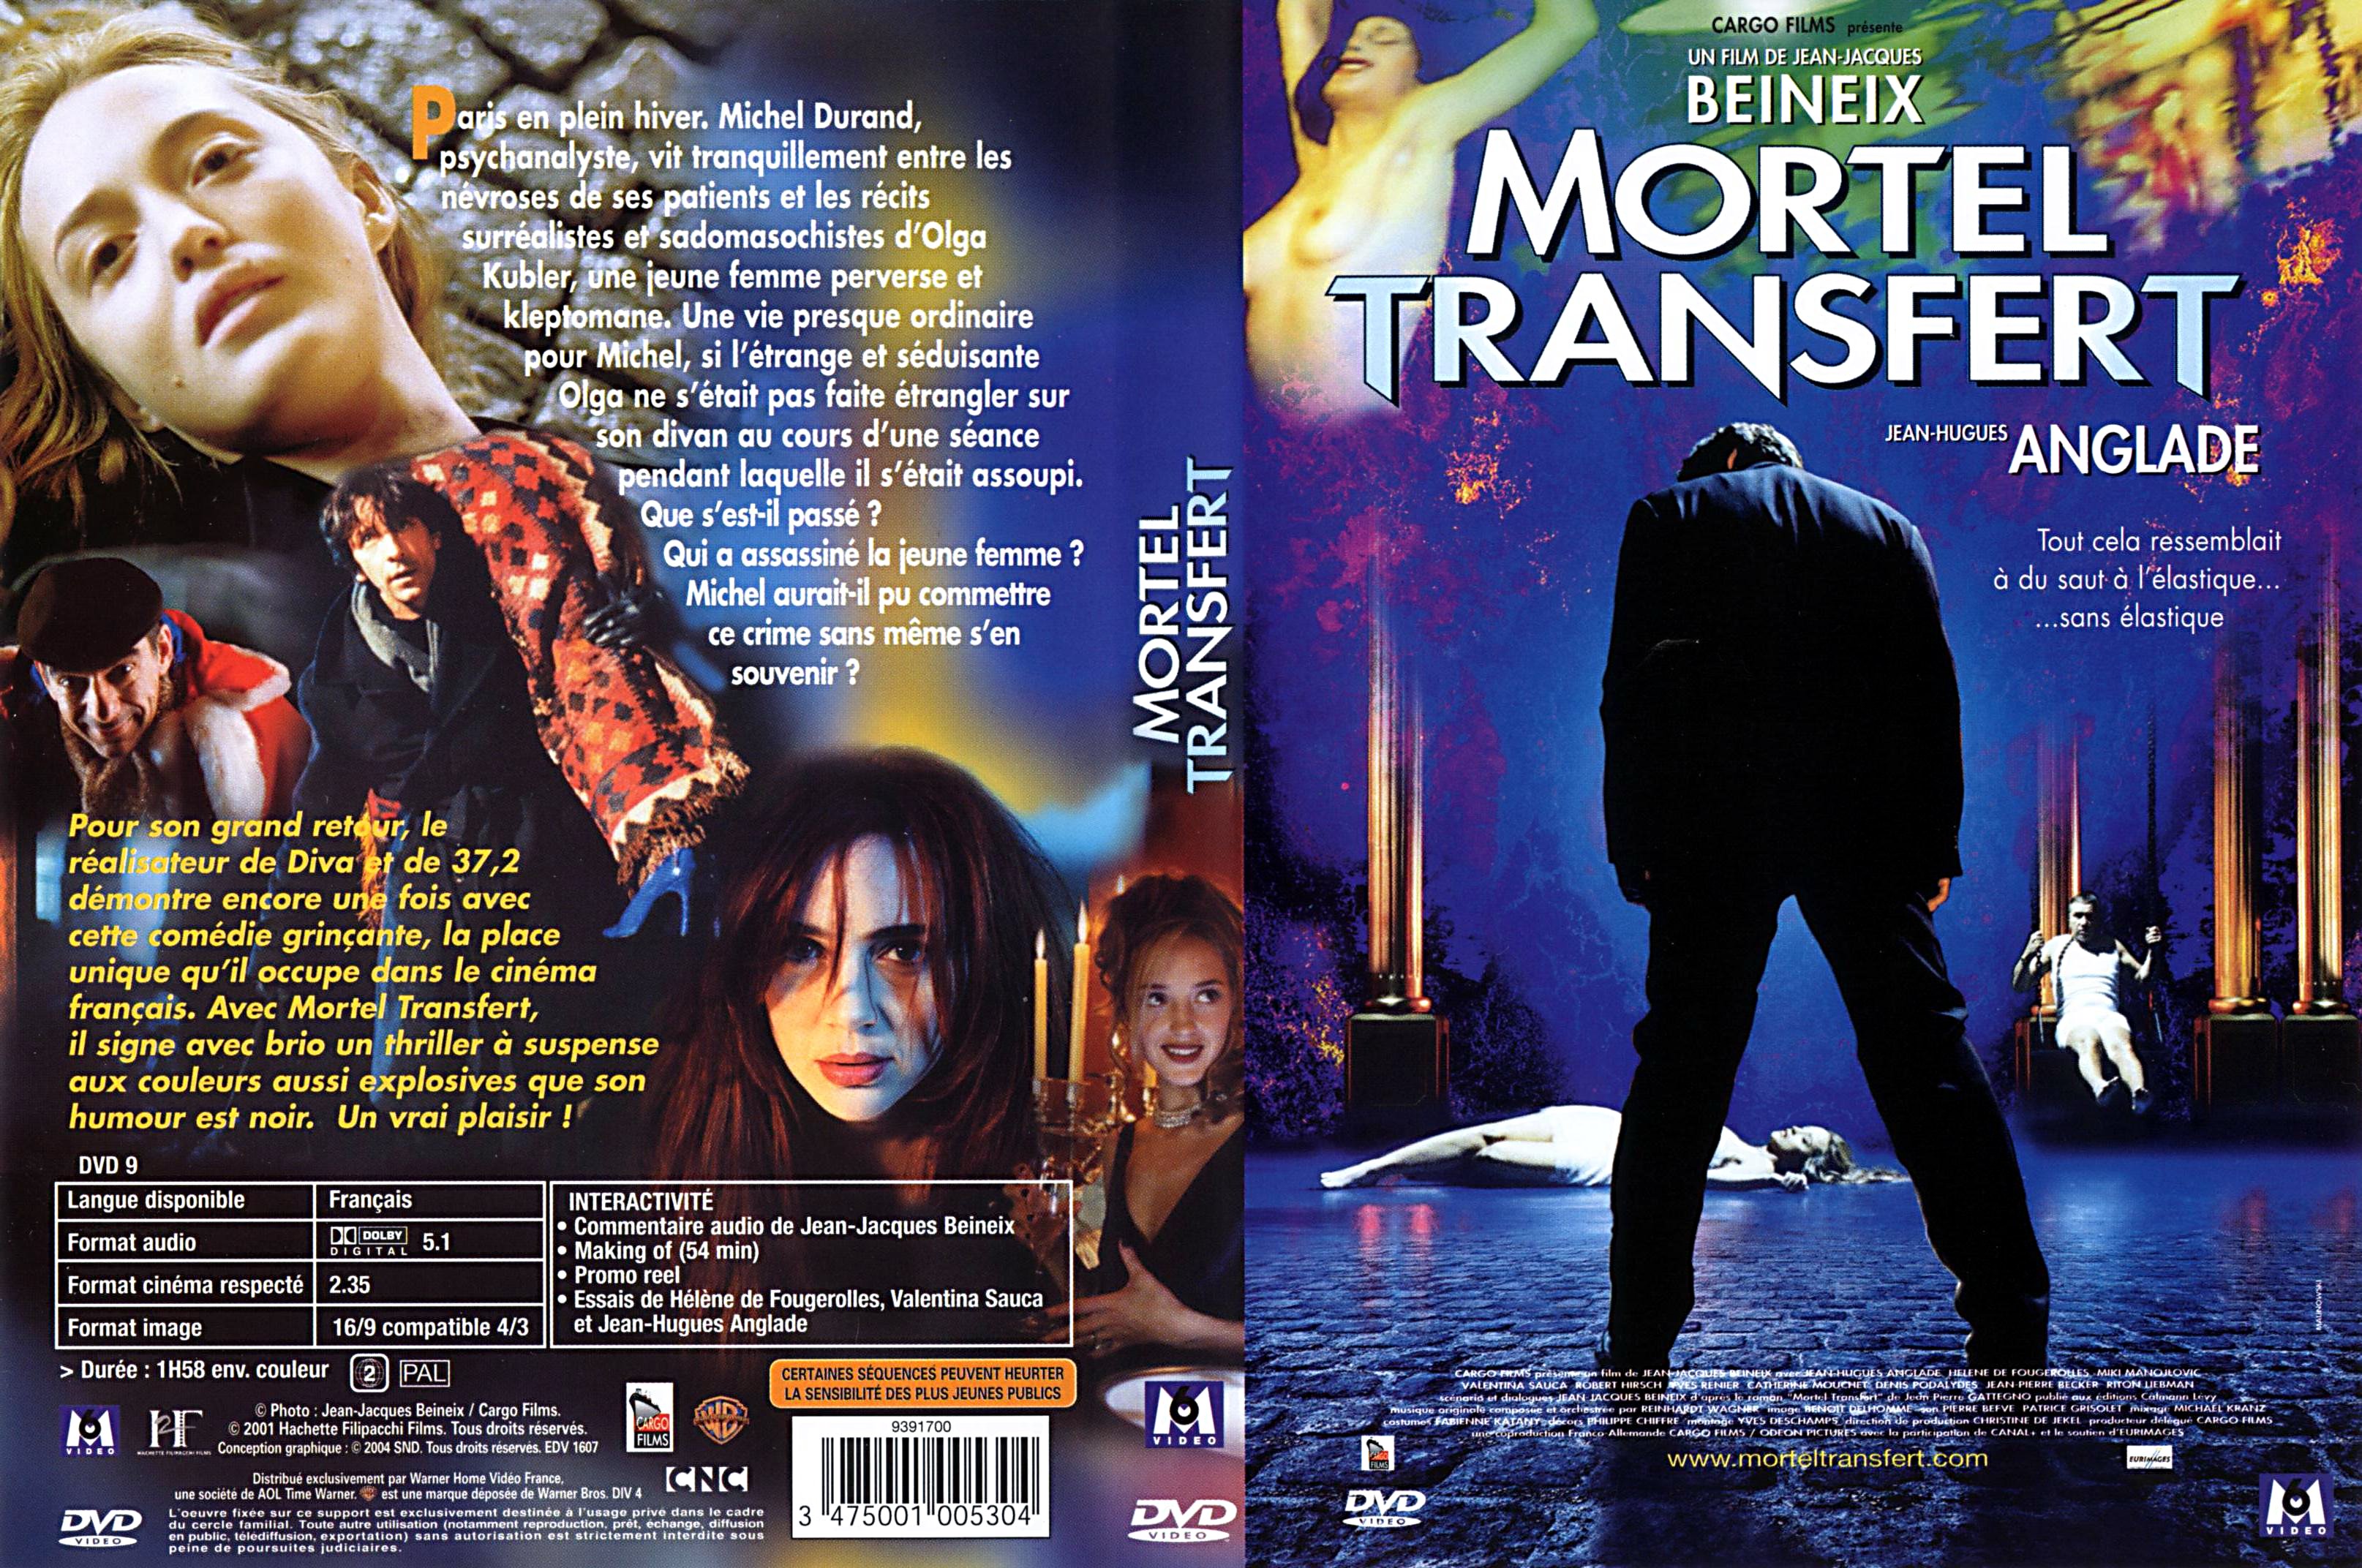 Jaquette DVD Mortel transfert